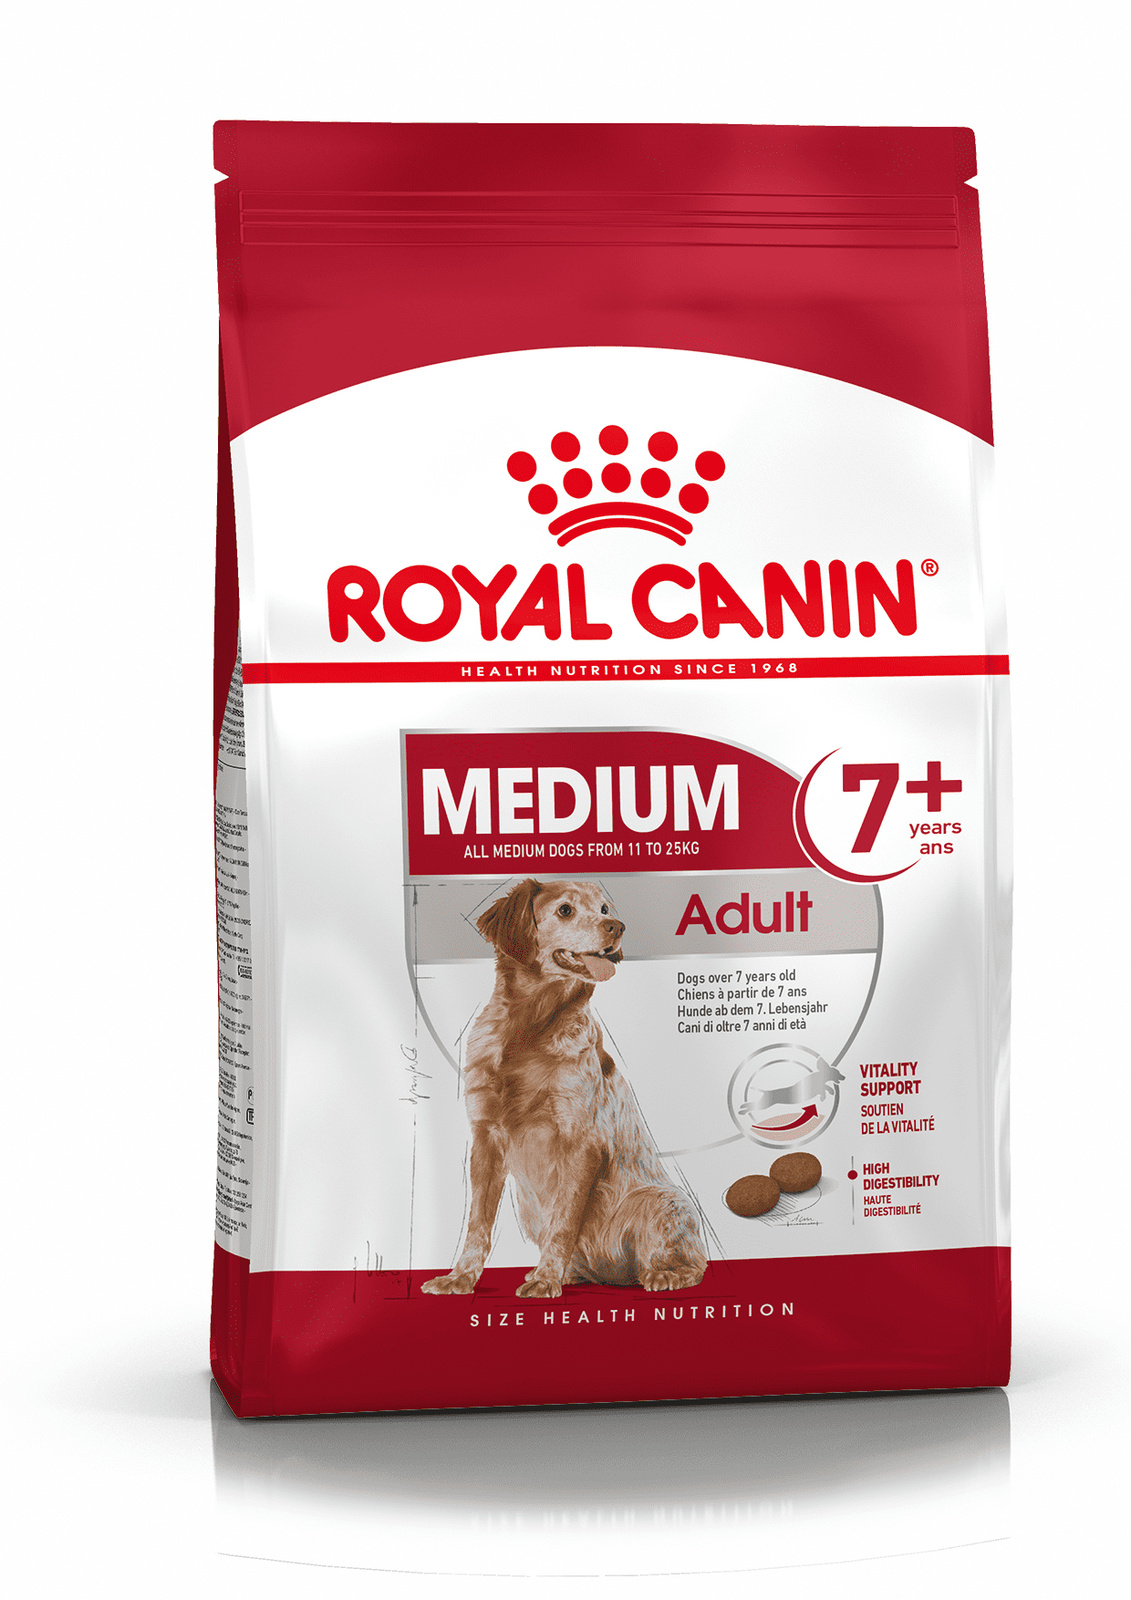 Royal Canin Корм Royal Canin корм для пожилых собак средних размеров: 11-25 кг, 7-10 лет (4 кг) цена и фото